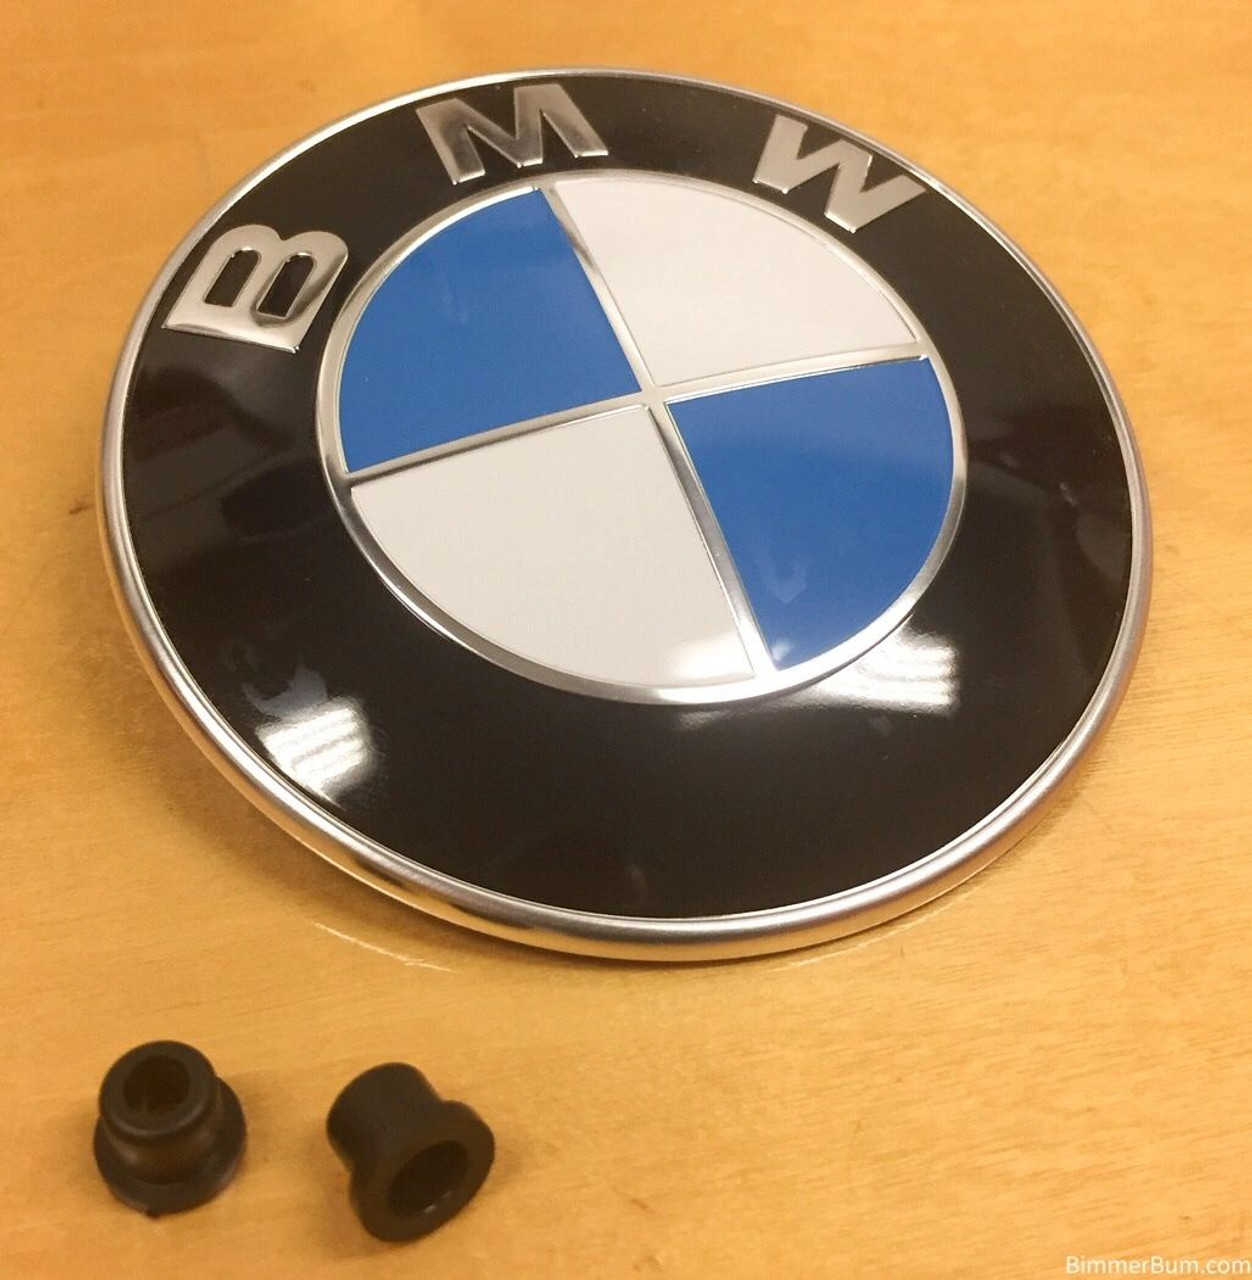  BMW Genuine Hood Roundel Emblem 82 mm for All Model